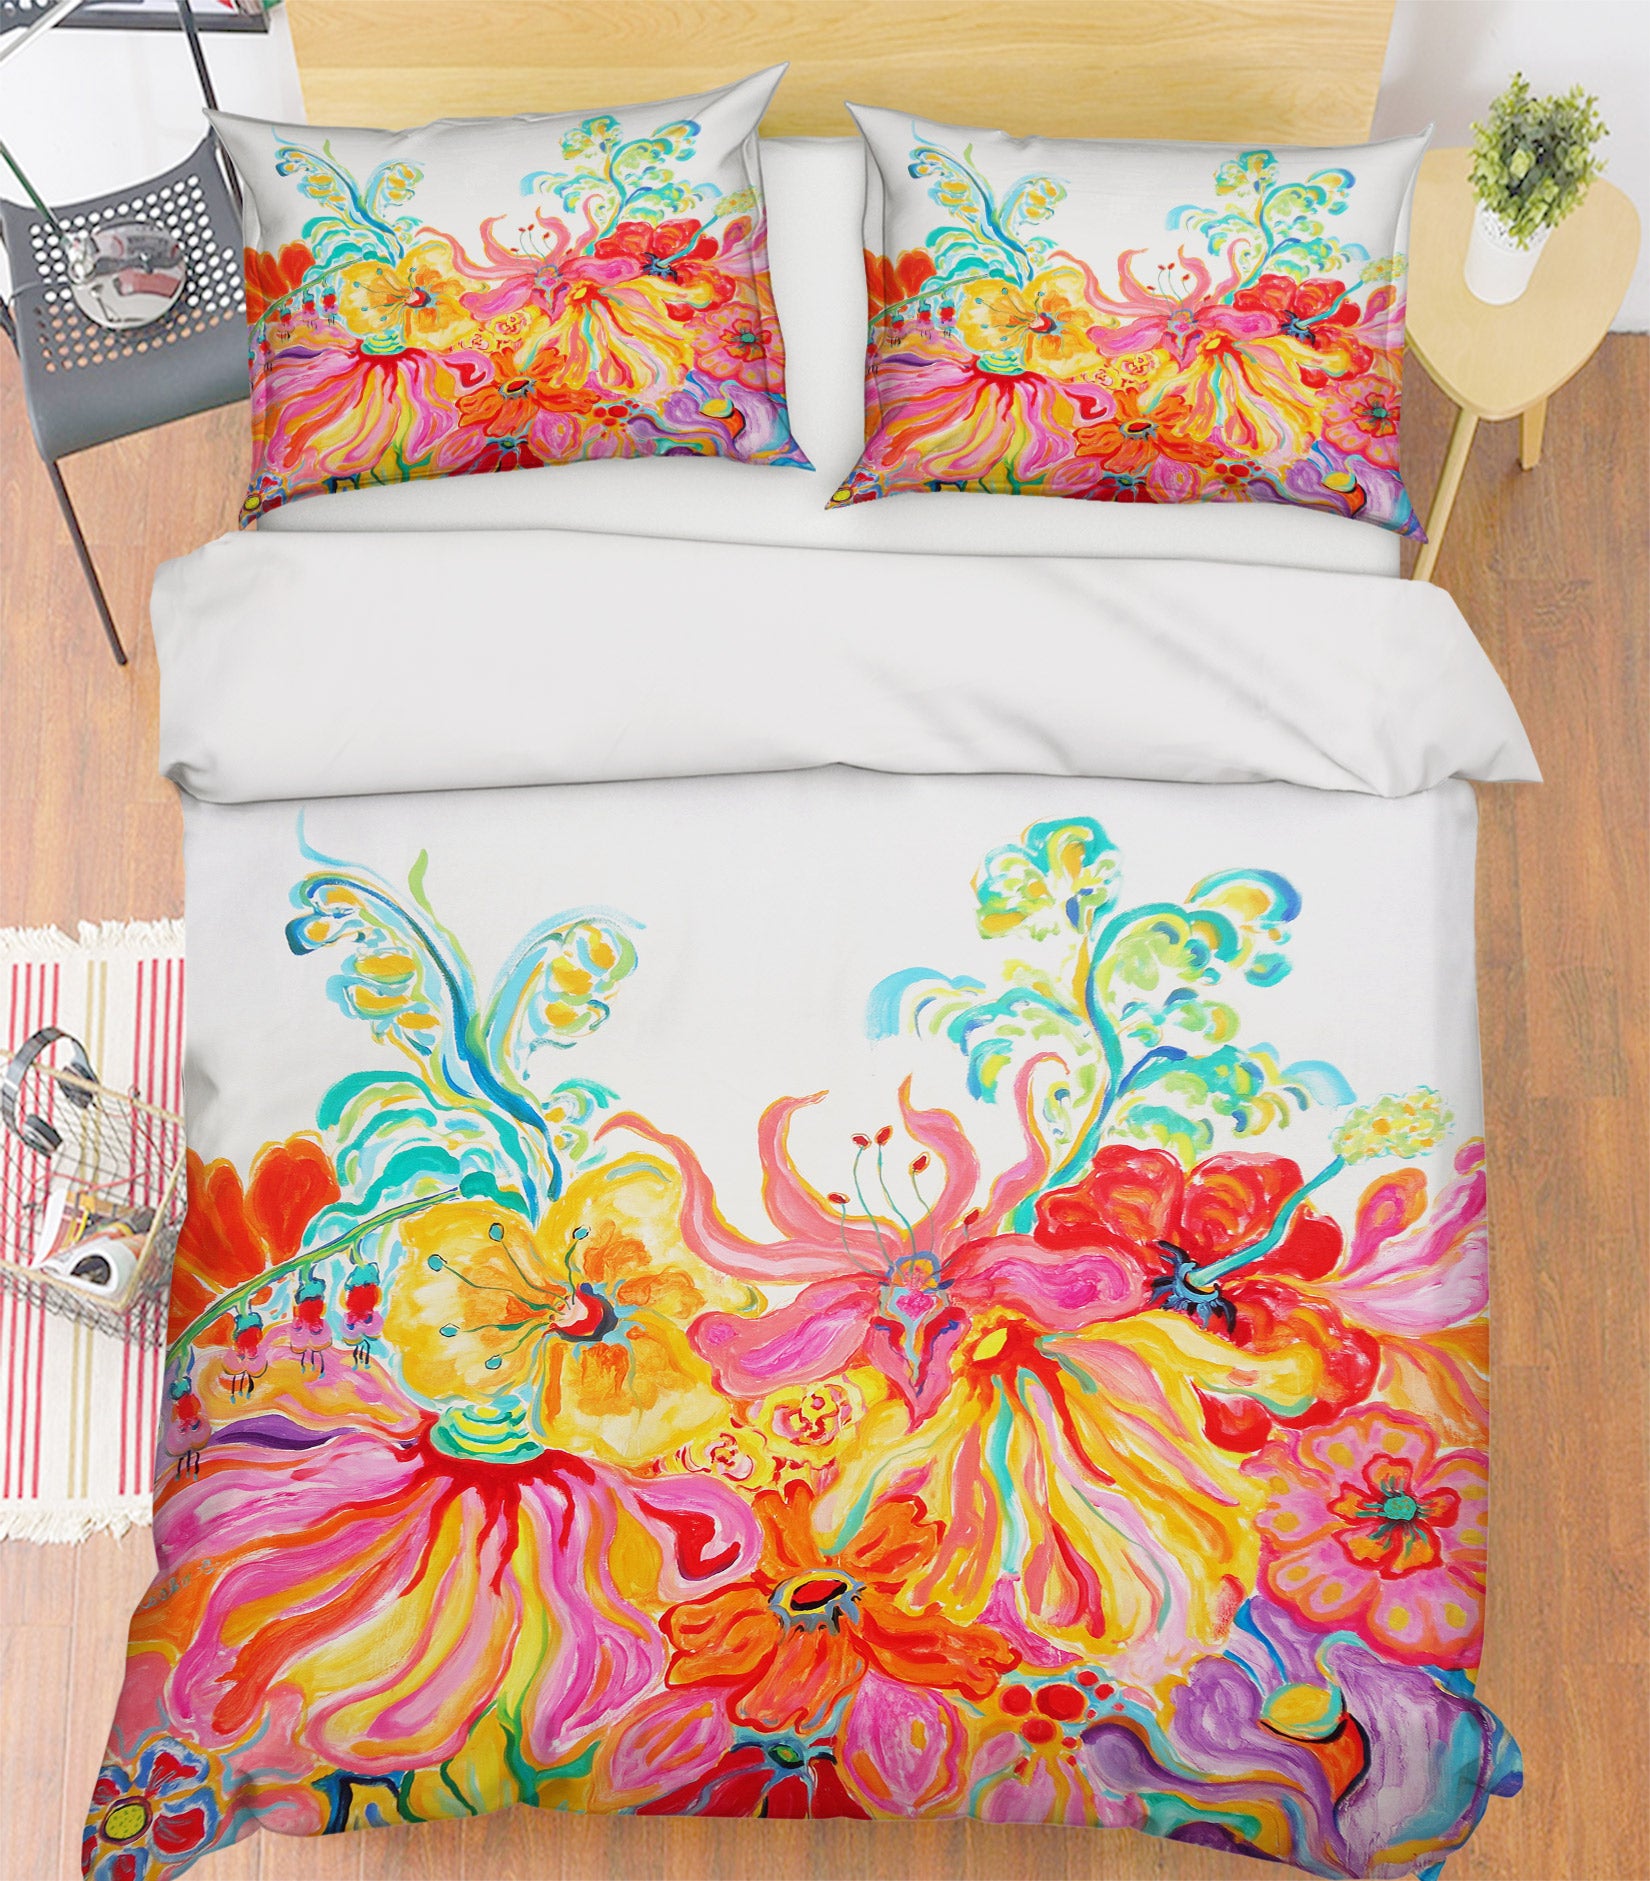 3D Colorful Flower 1250 Misako Chida Bedding Bed Pillowcases Quilt Cover Duvet Cover